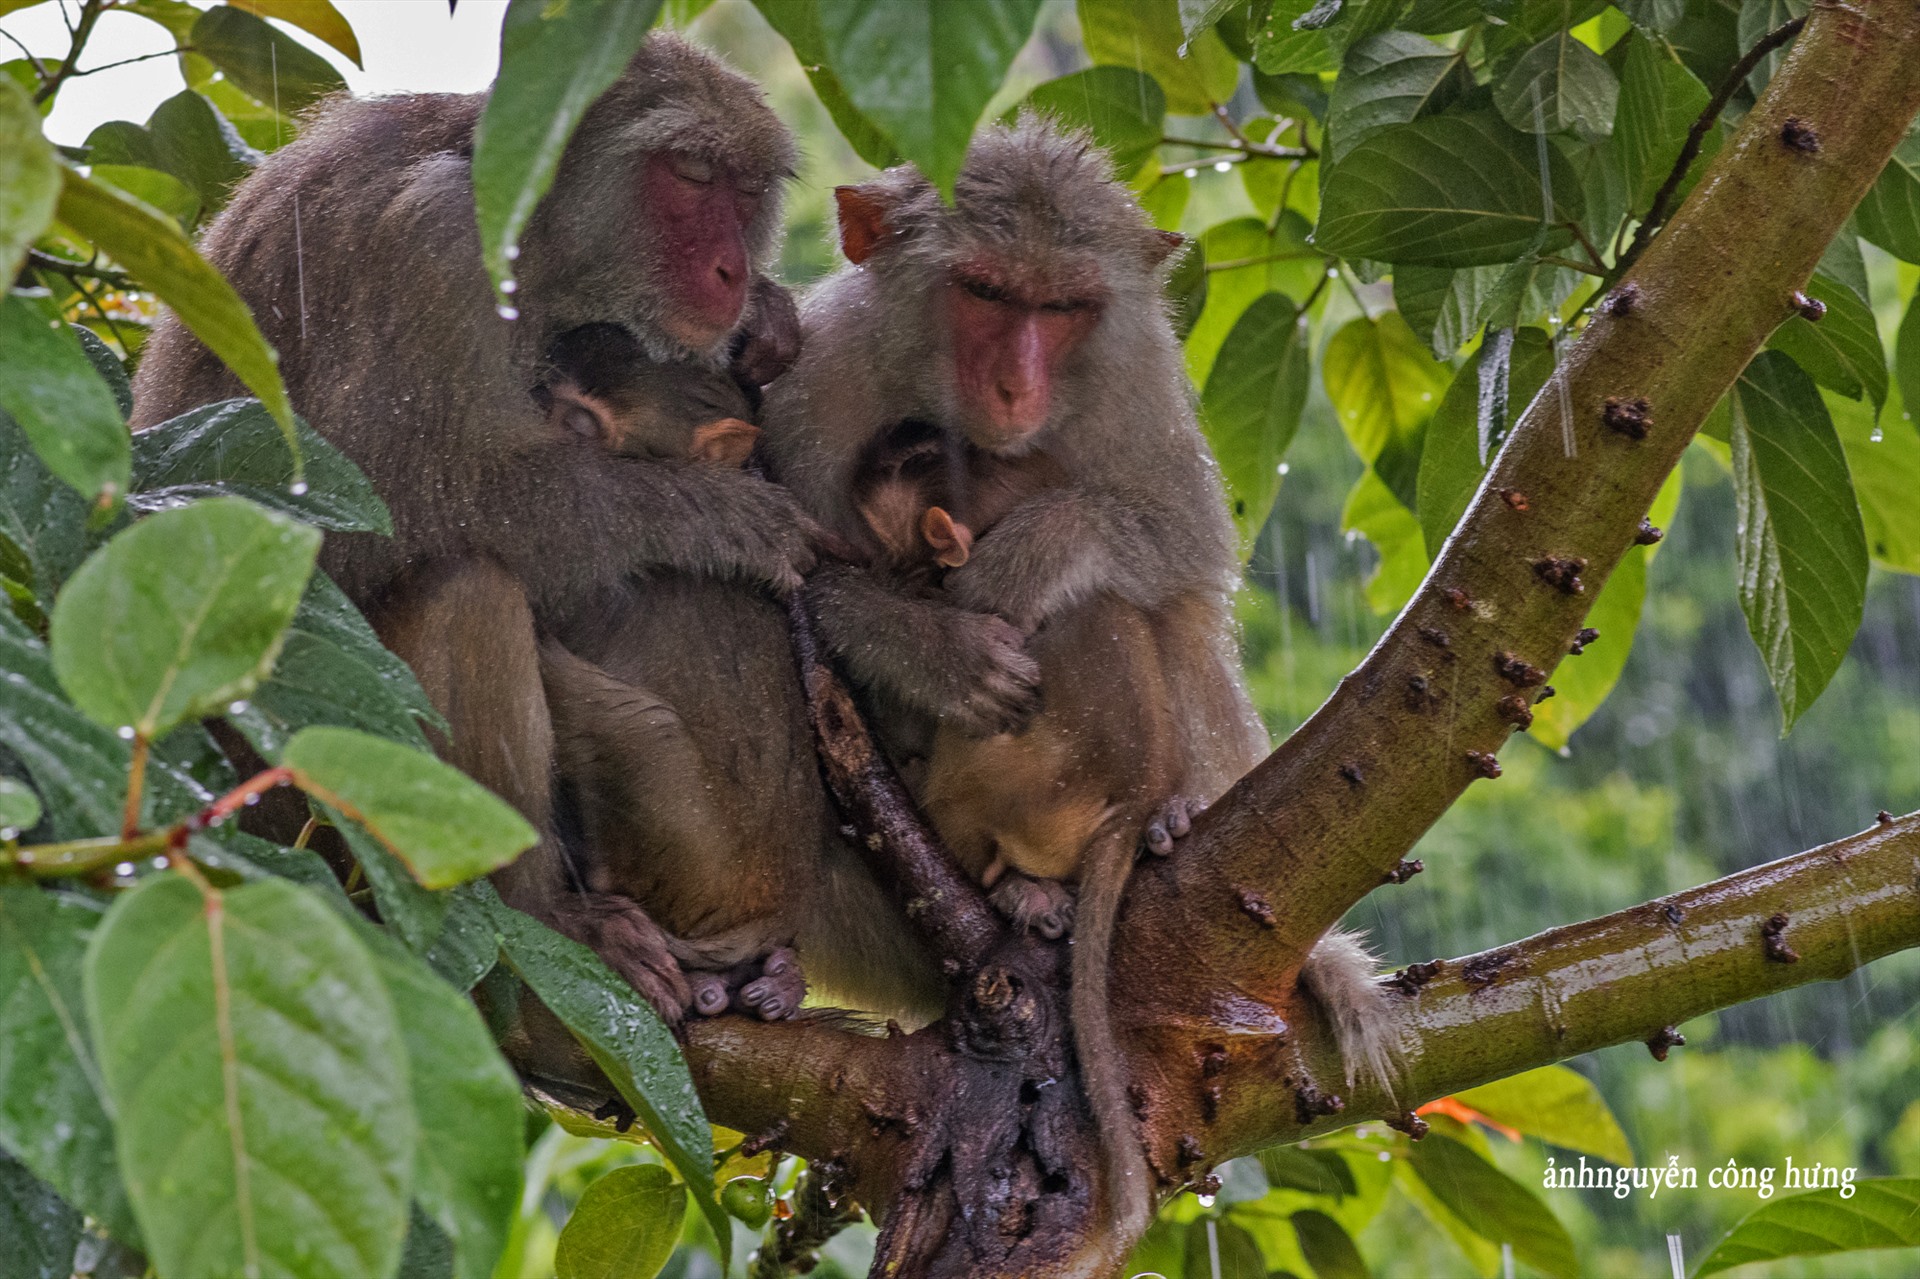 Đảo Khỉ là một địa danh du lịch nổi tiếng ở Việt Nam, để khám phá sự đặc biệt của những con khỉ độc đáo ở đây hãy đến và xem những bức ảnh tuyệt đẹp của họ. Bạn sẽ được thưởng thức những khoảnh khắc tuyệt vời với động vật tiếp xúc gần gũi với con người.